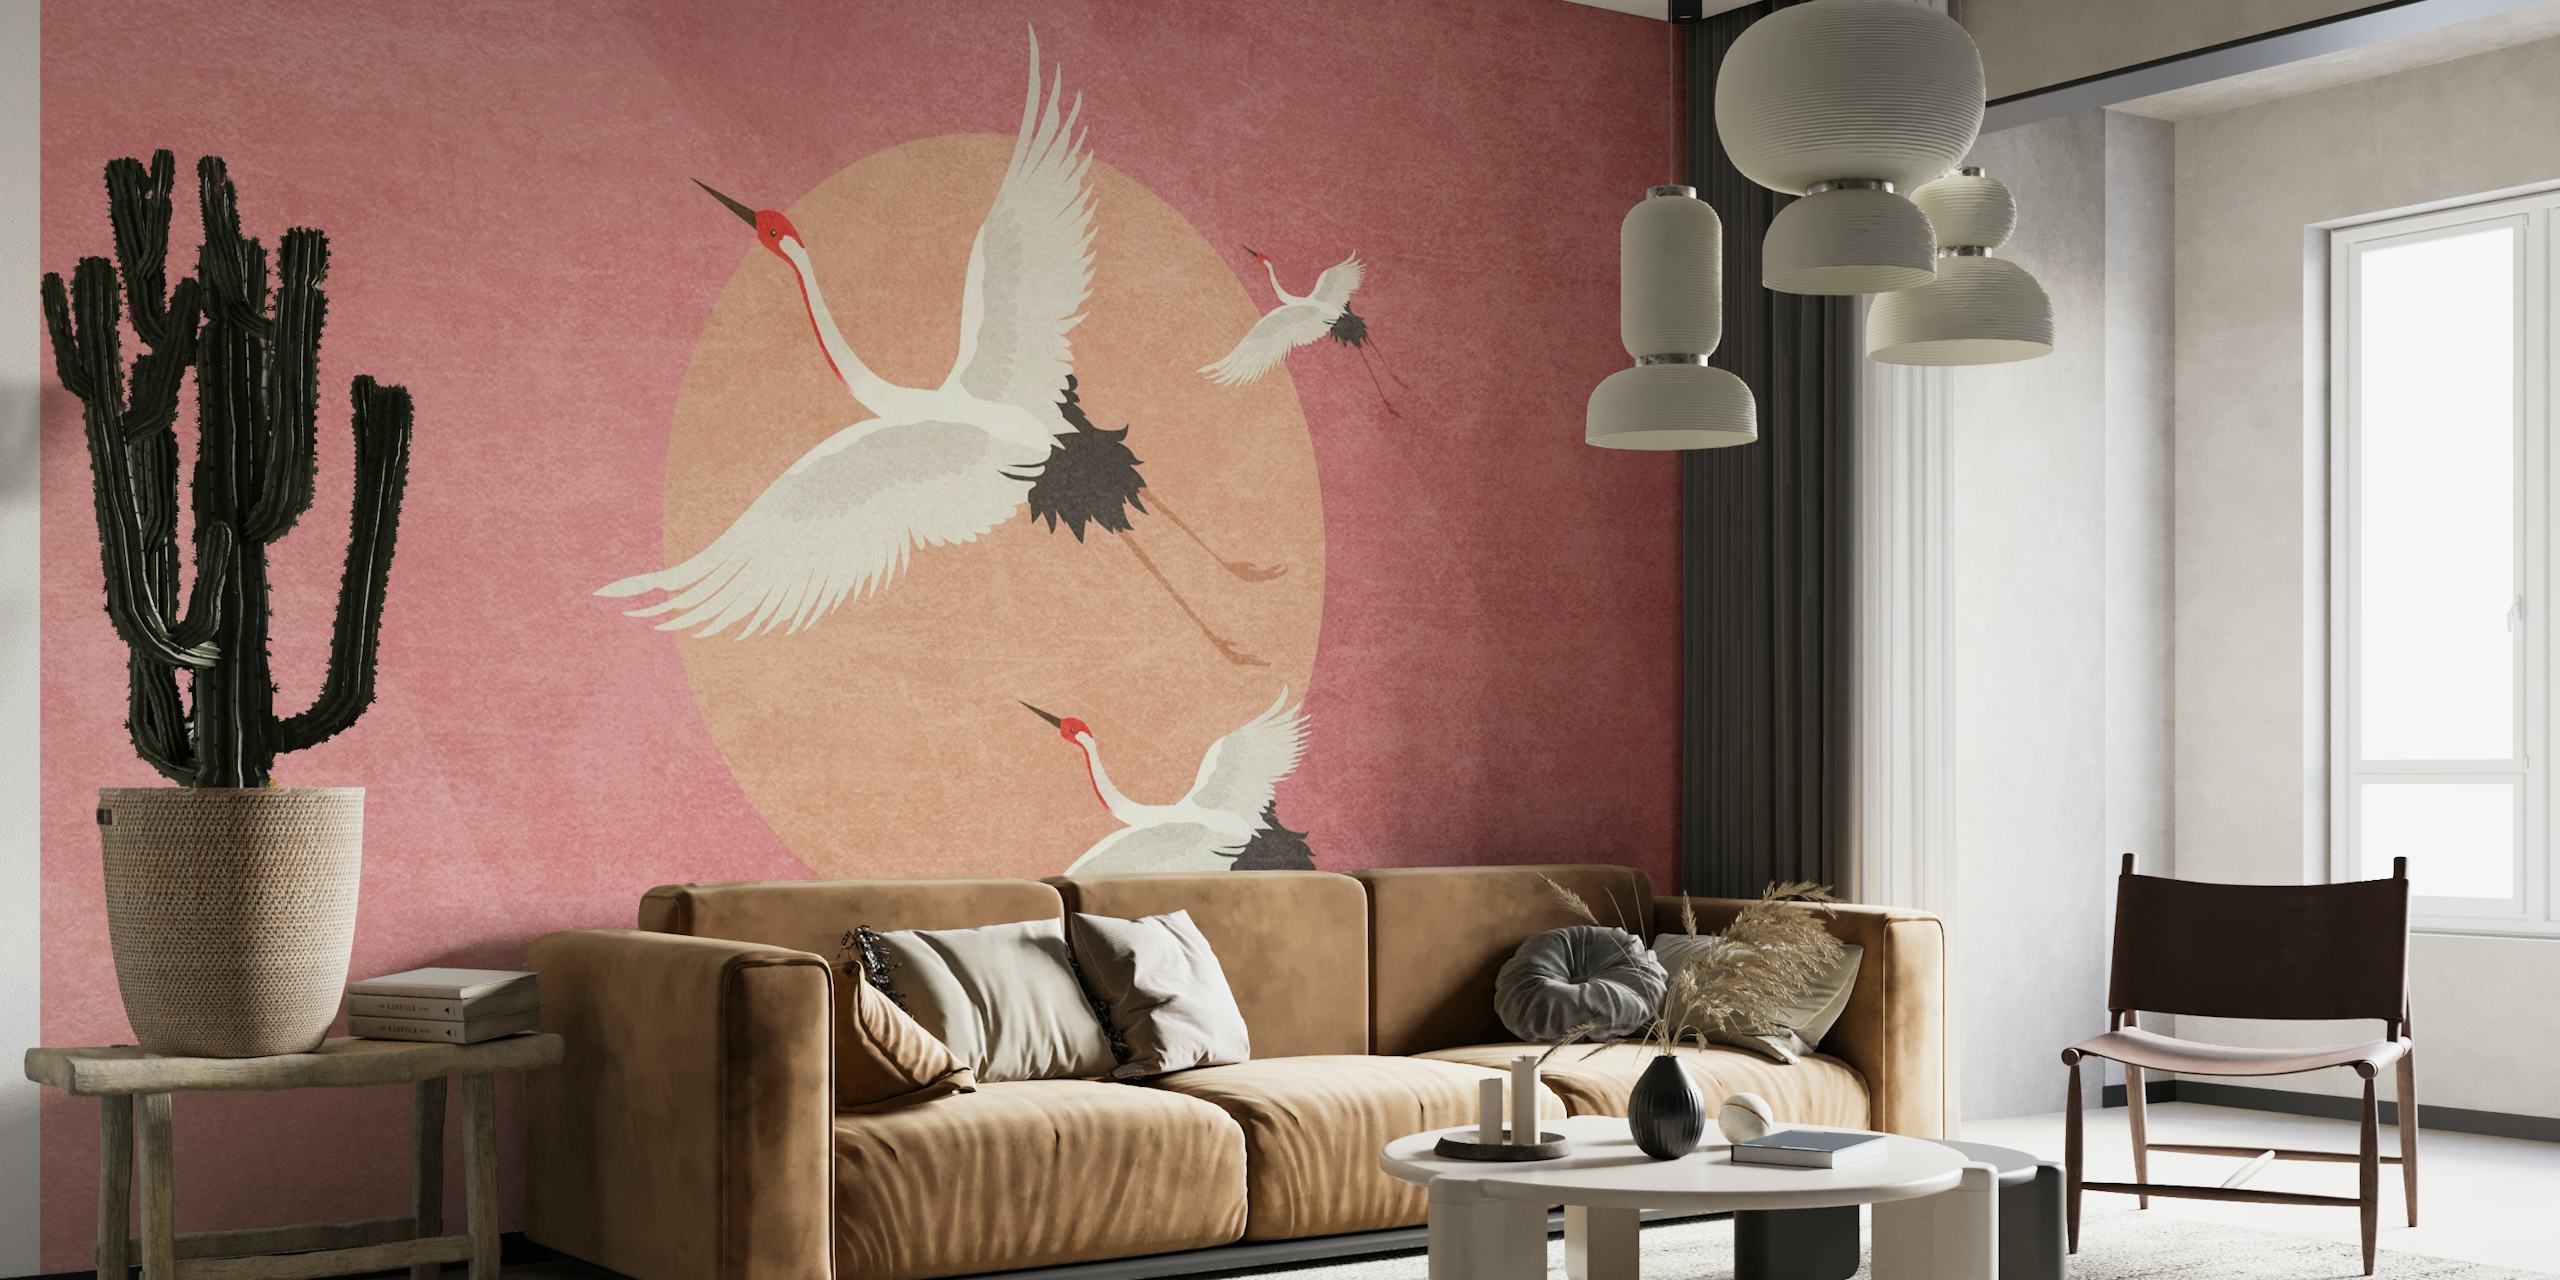 Wandgemälde „Kraniche im Flug“ von Bohonewart auf rosafarbenem Hintergrund